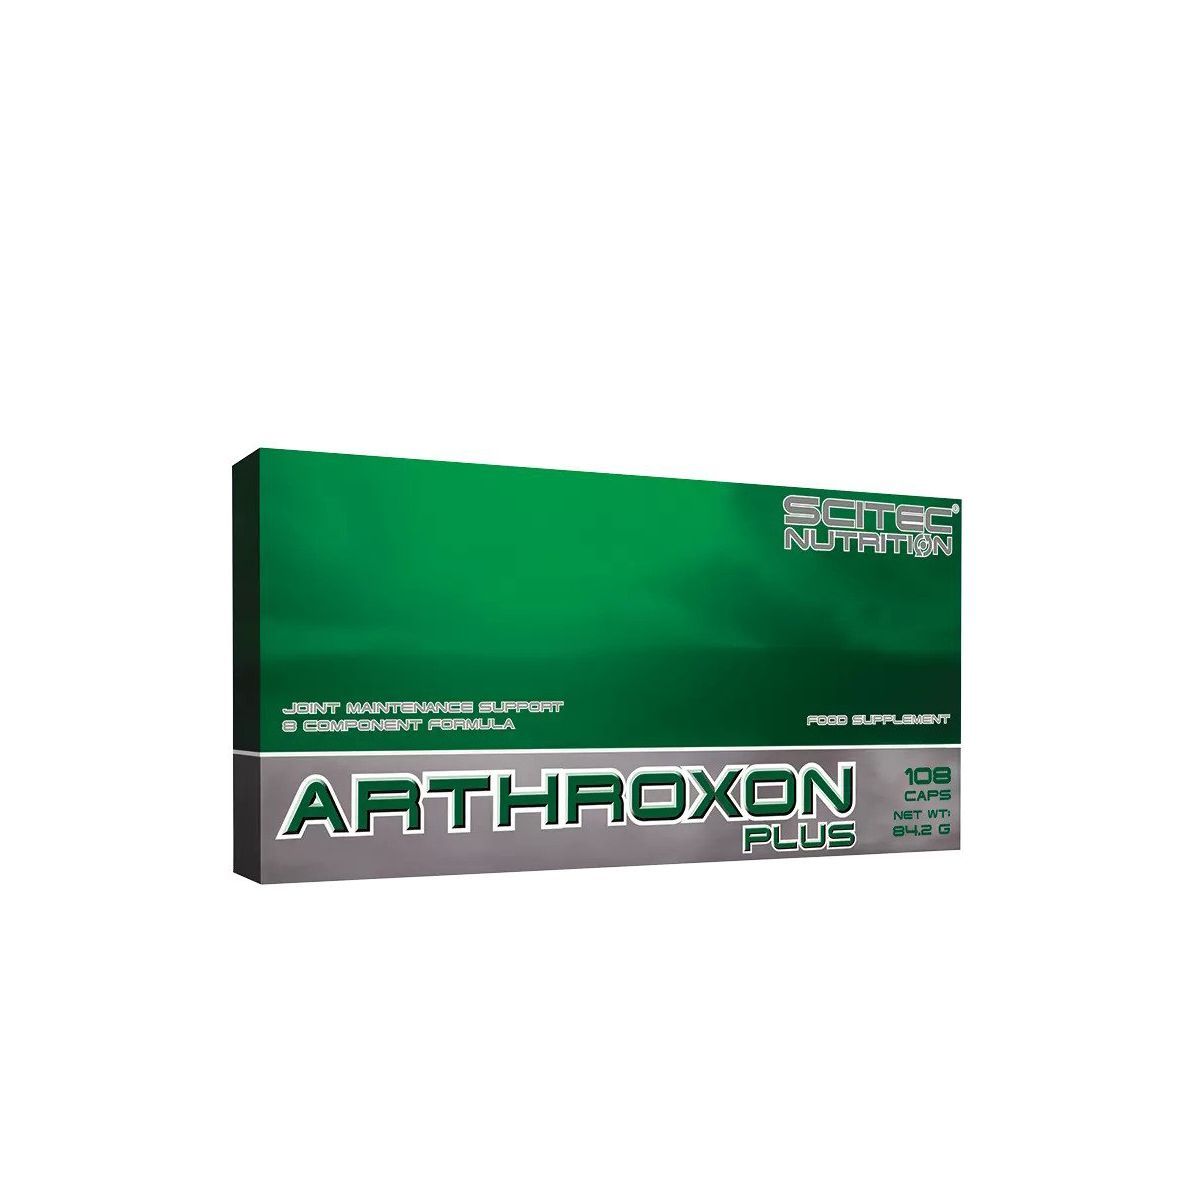 Scitec Nutrition - Arthroxon Plus - Ízület karbantartó komplex - 108 kapszula